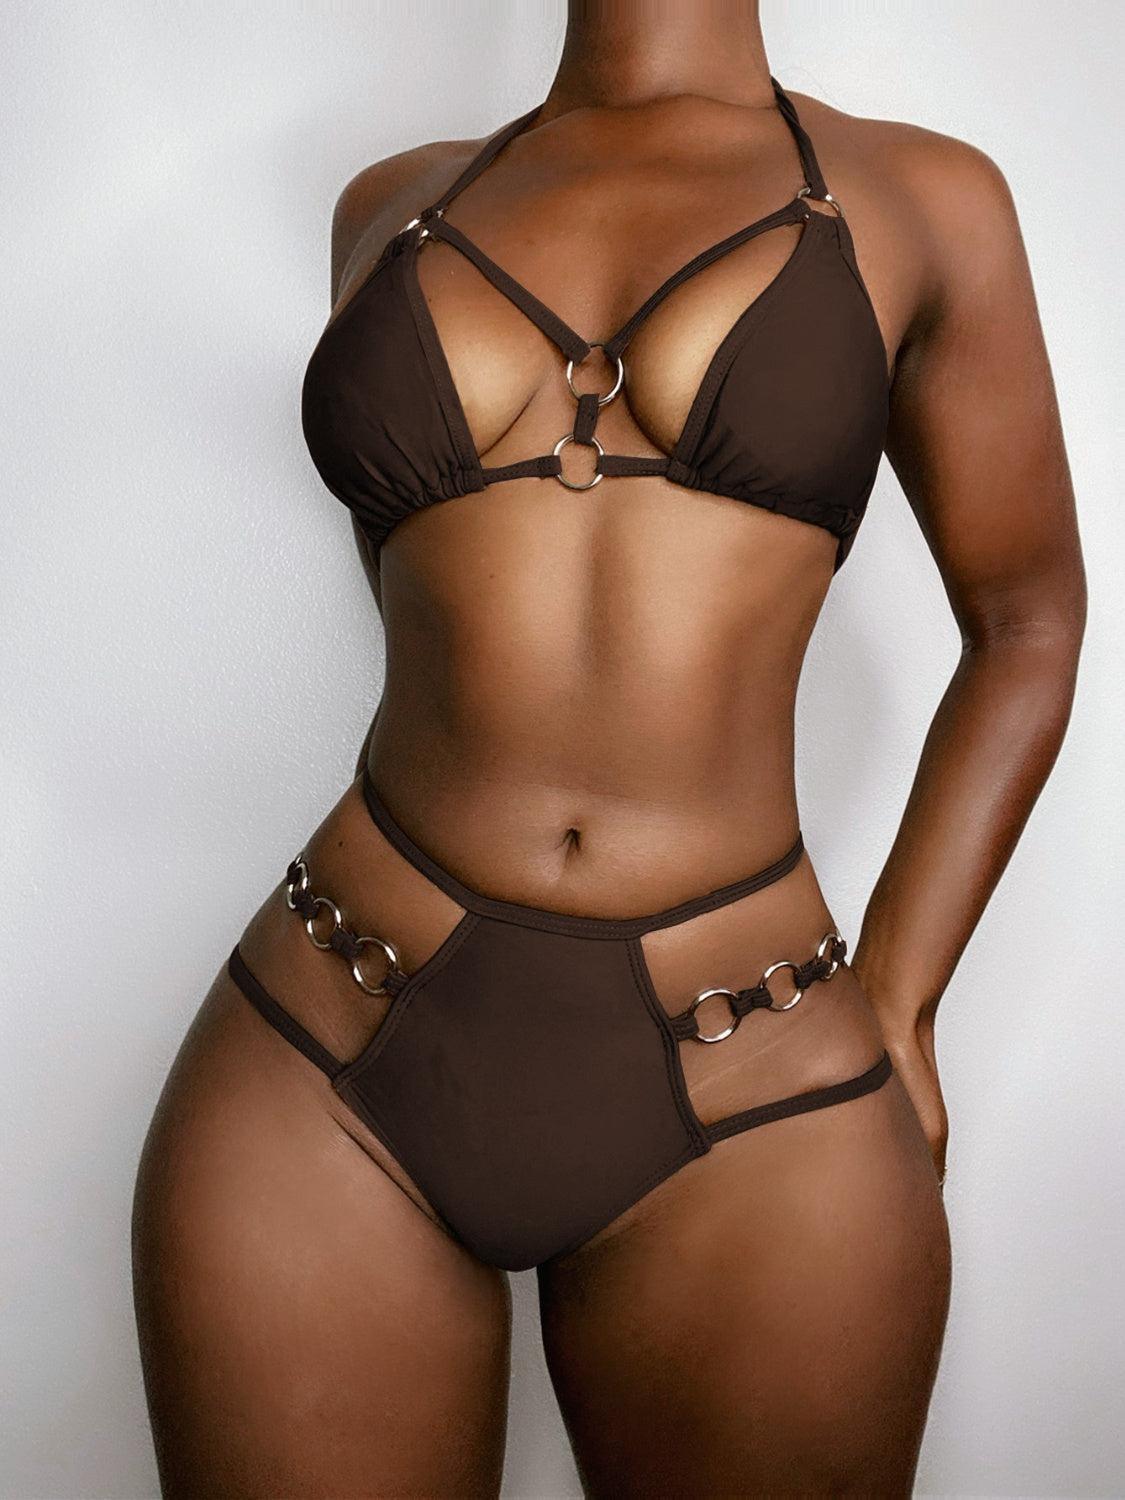 a woman in a brown bikini top and panties